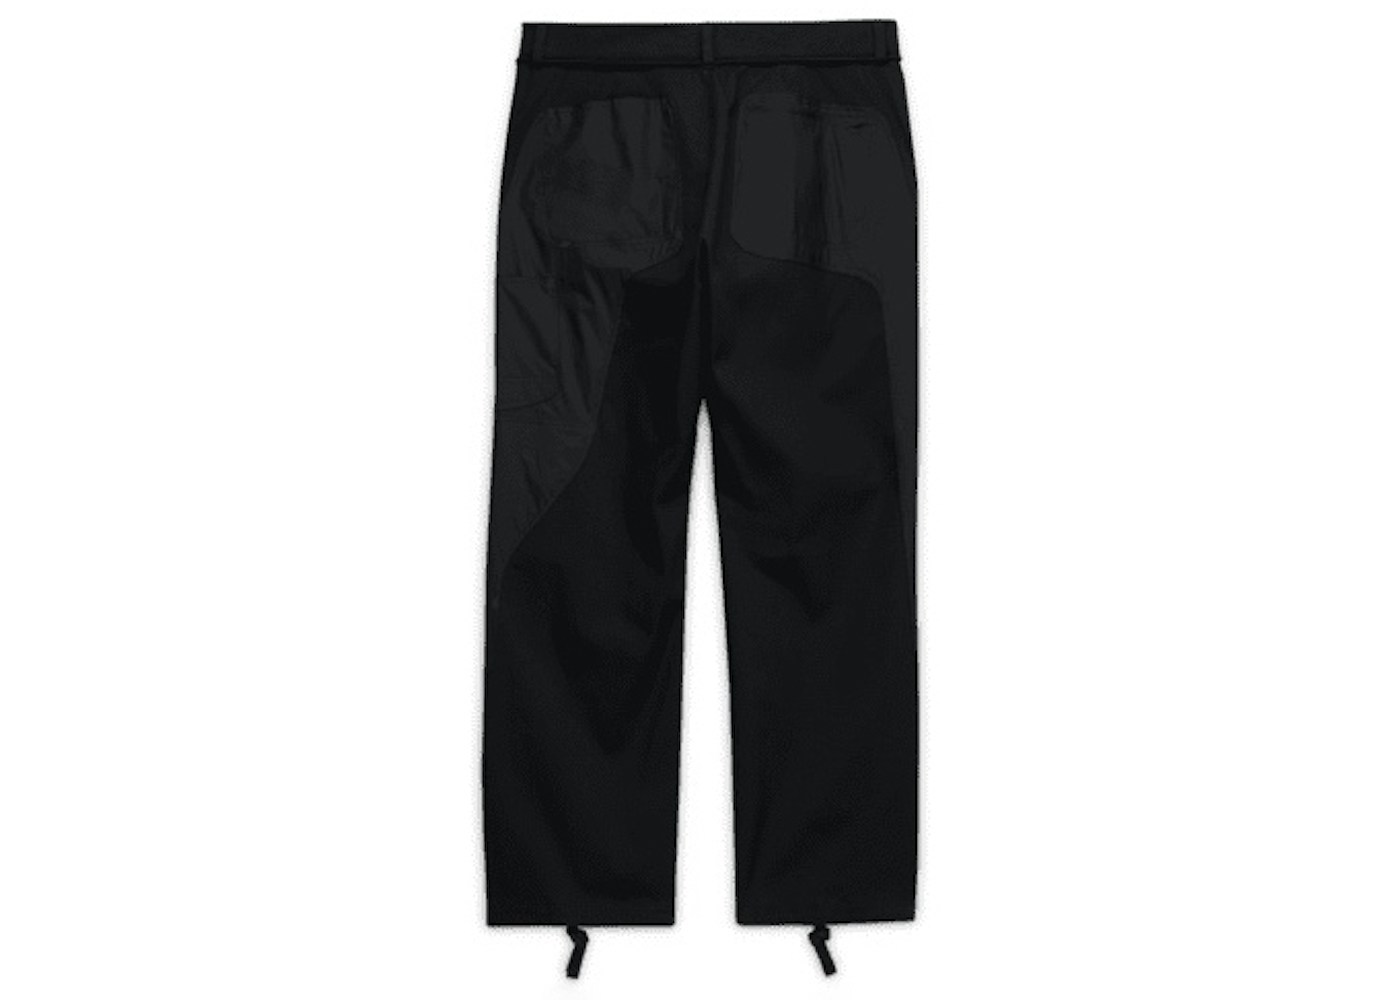 OFF-WHITE x Nike Pants Black - SS21